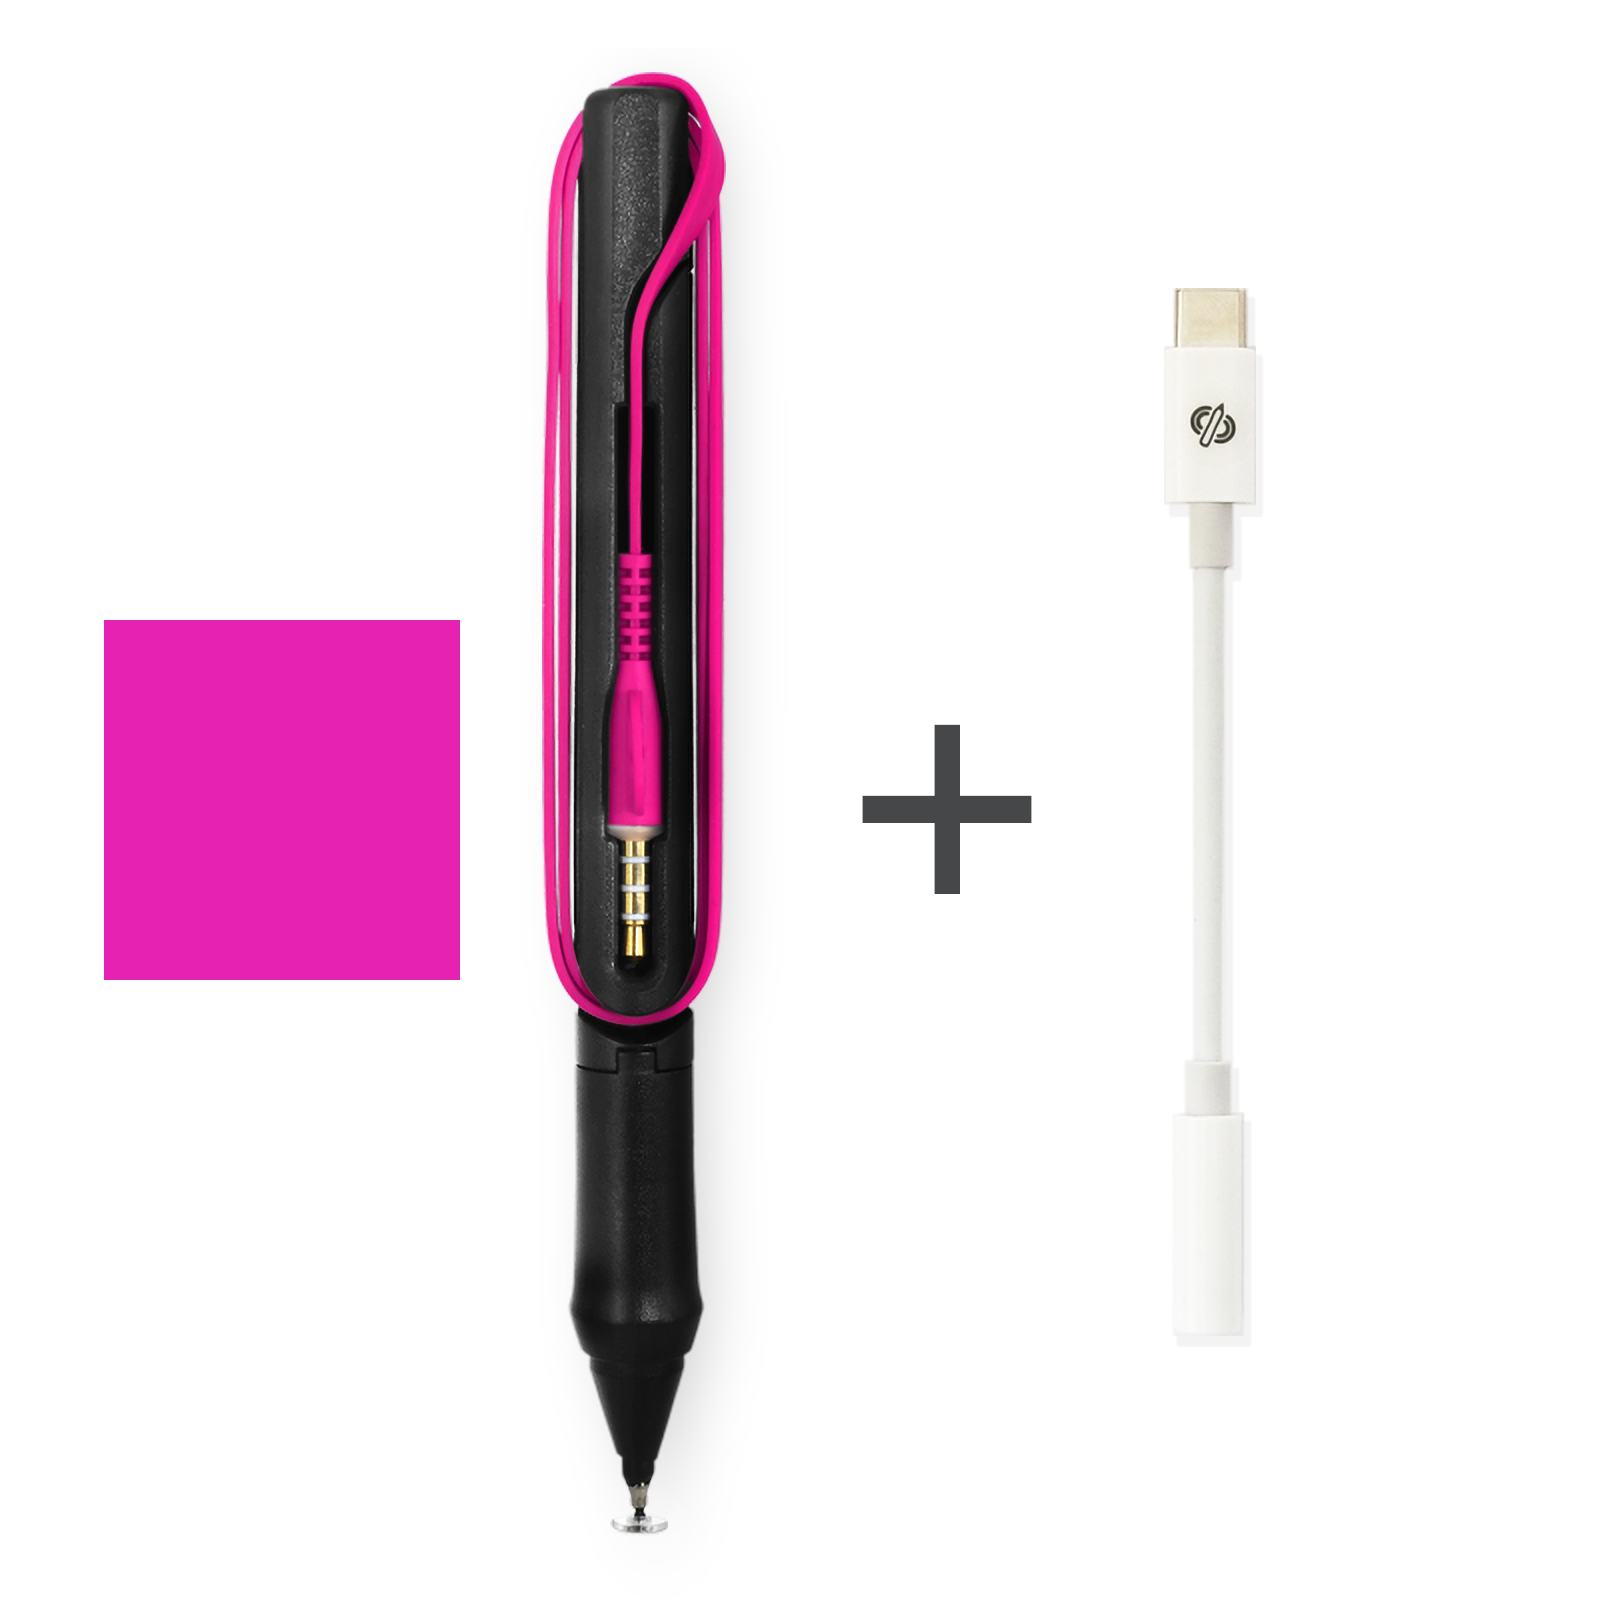 Colors SonarPen USB-C Adaptor – Colors Live Store